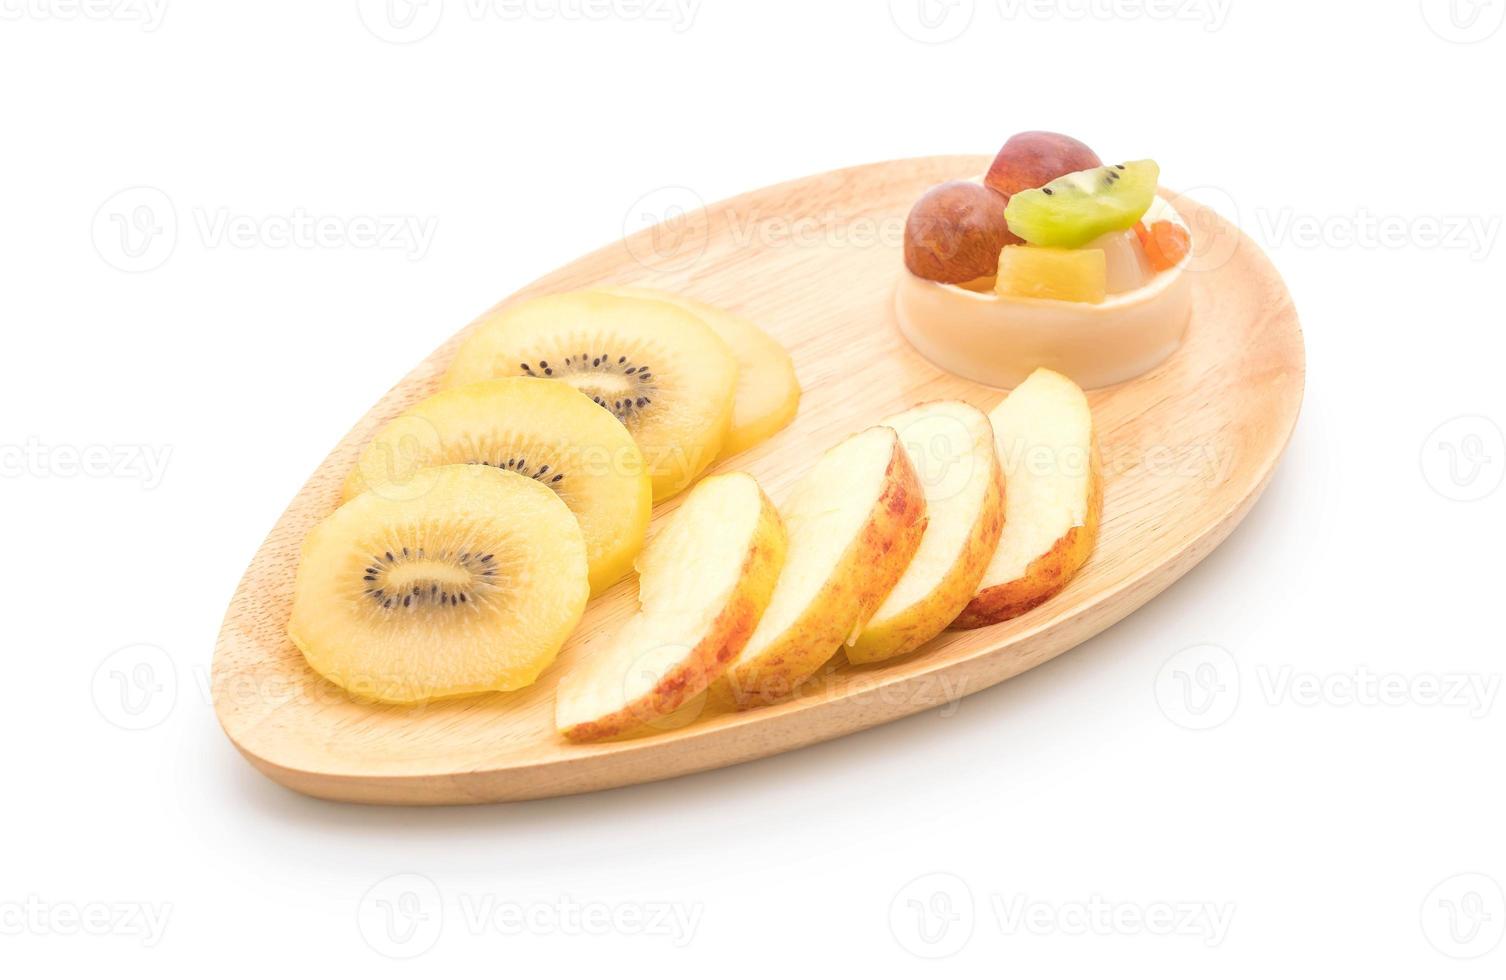 puddingvruchten met kiwi en appel op tafel foto